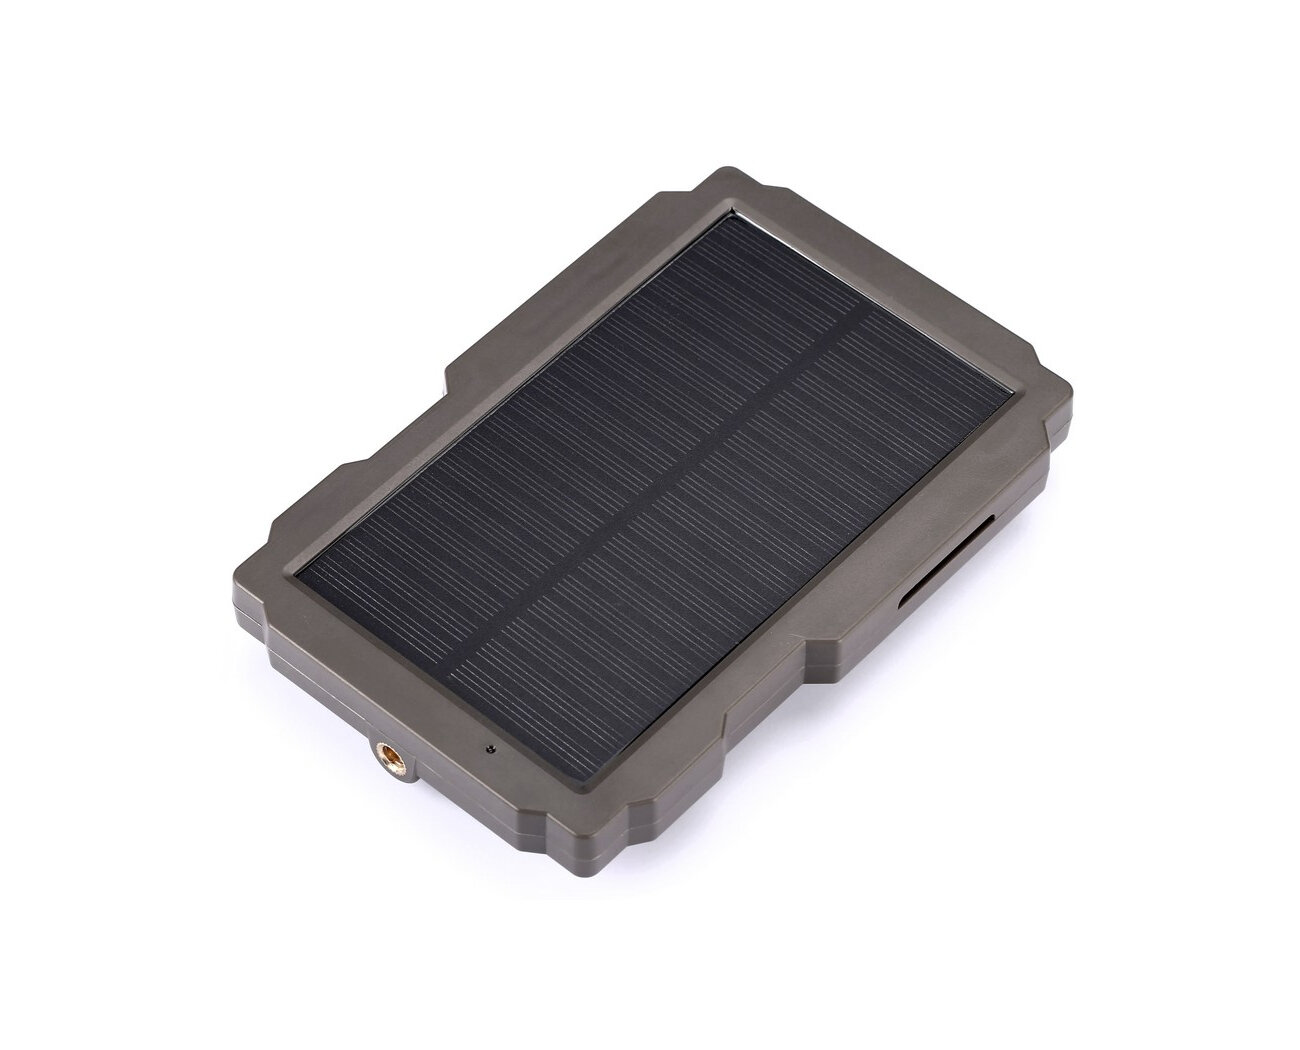 СП08-Дуал (Оригинал) (C908880PS) - солнечная панель для фотоловушки (выходное напряжение - 6 и 12 В, встроенный аккумулятор на 3000 мАч)